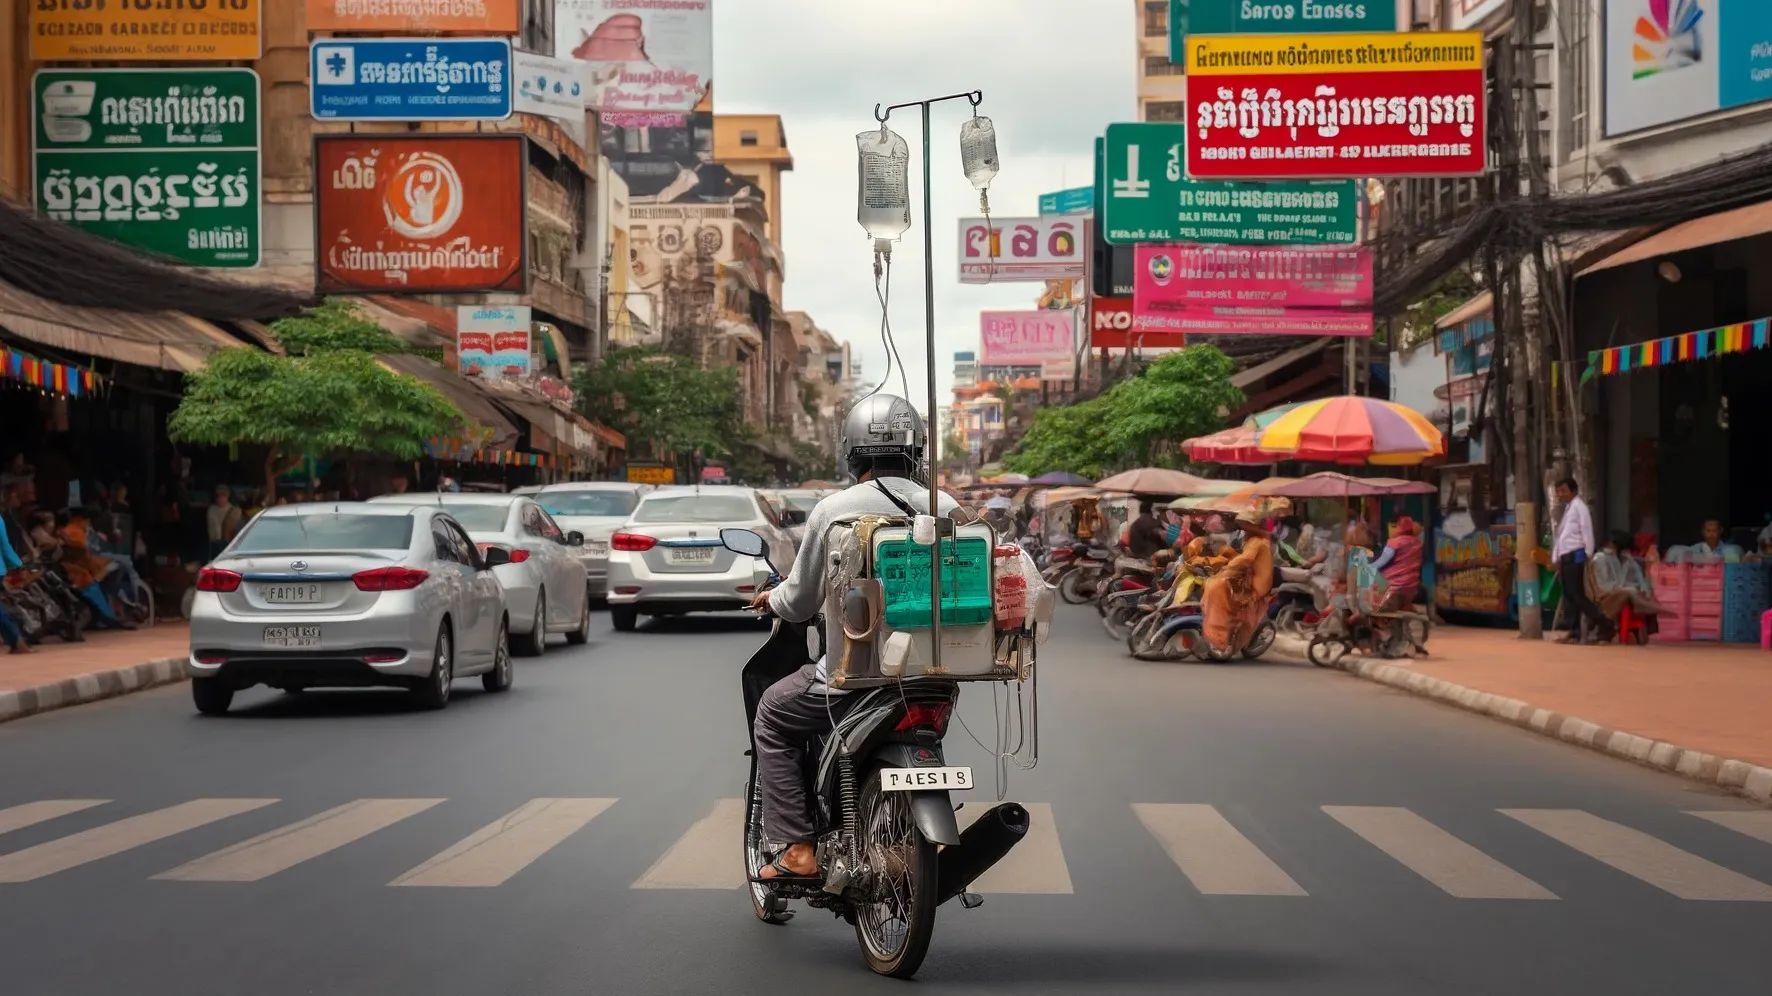 Как в Камбодже обожают капельницы на мотоцикле фото на taspanews.kz от 30 мая 2024 12:04